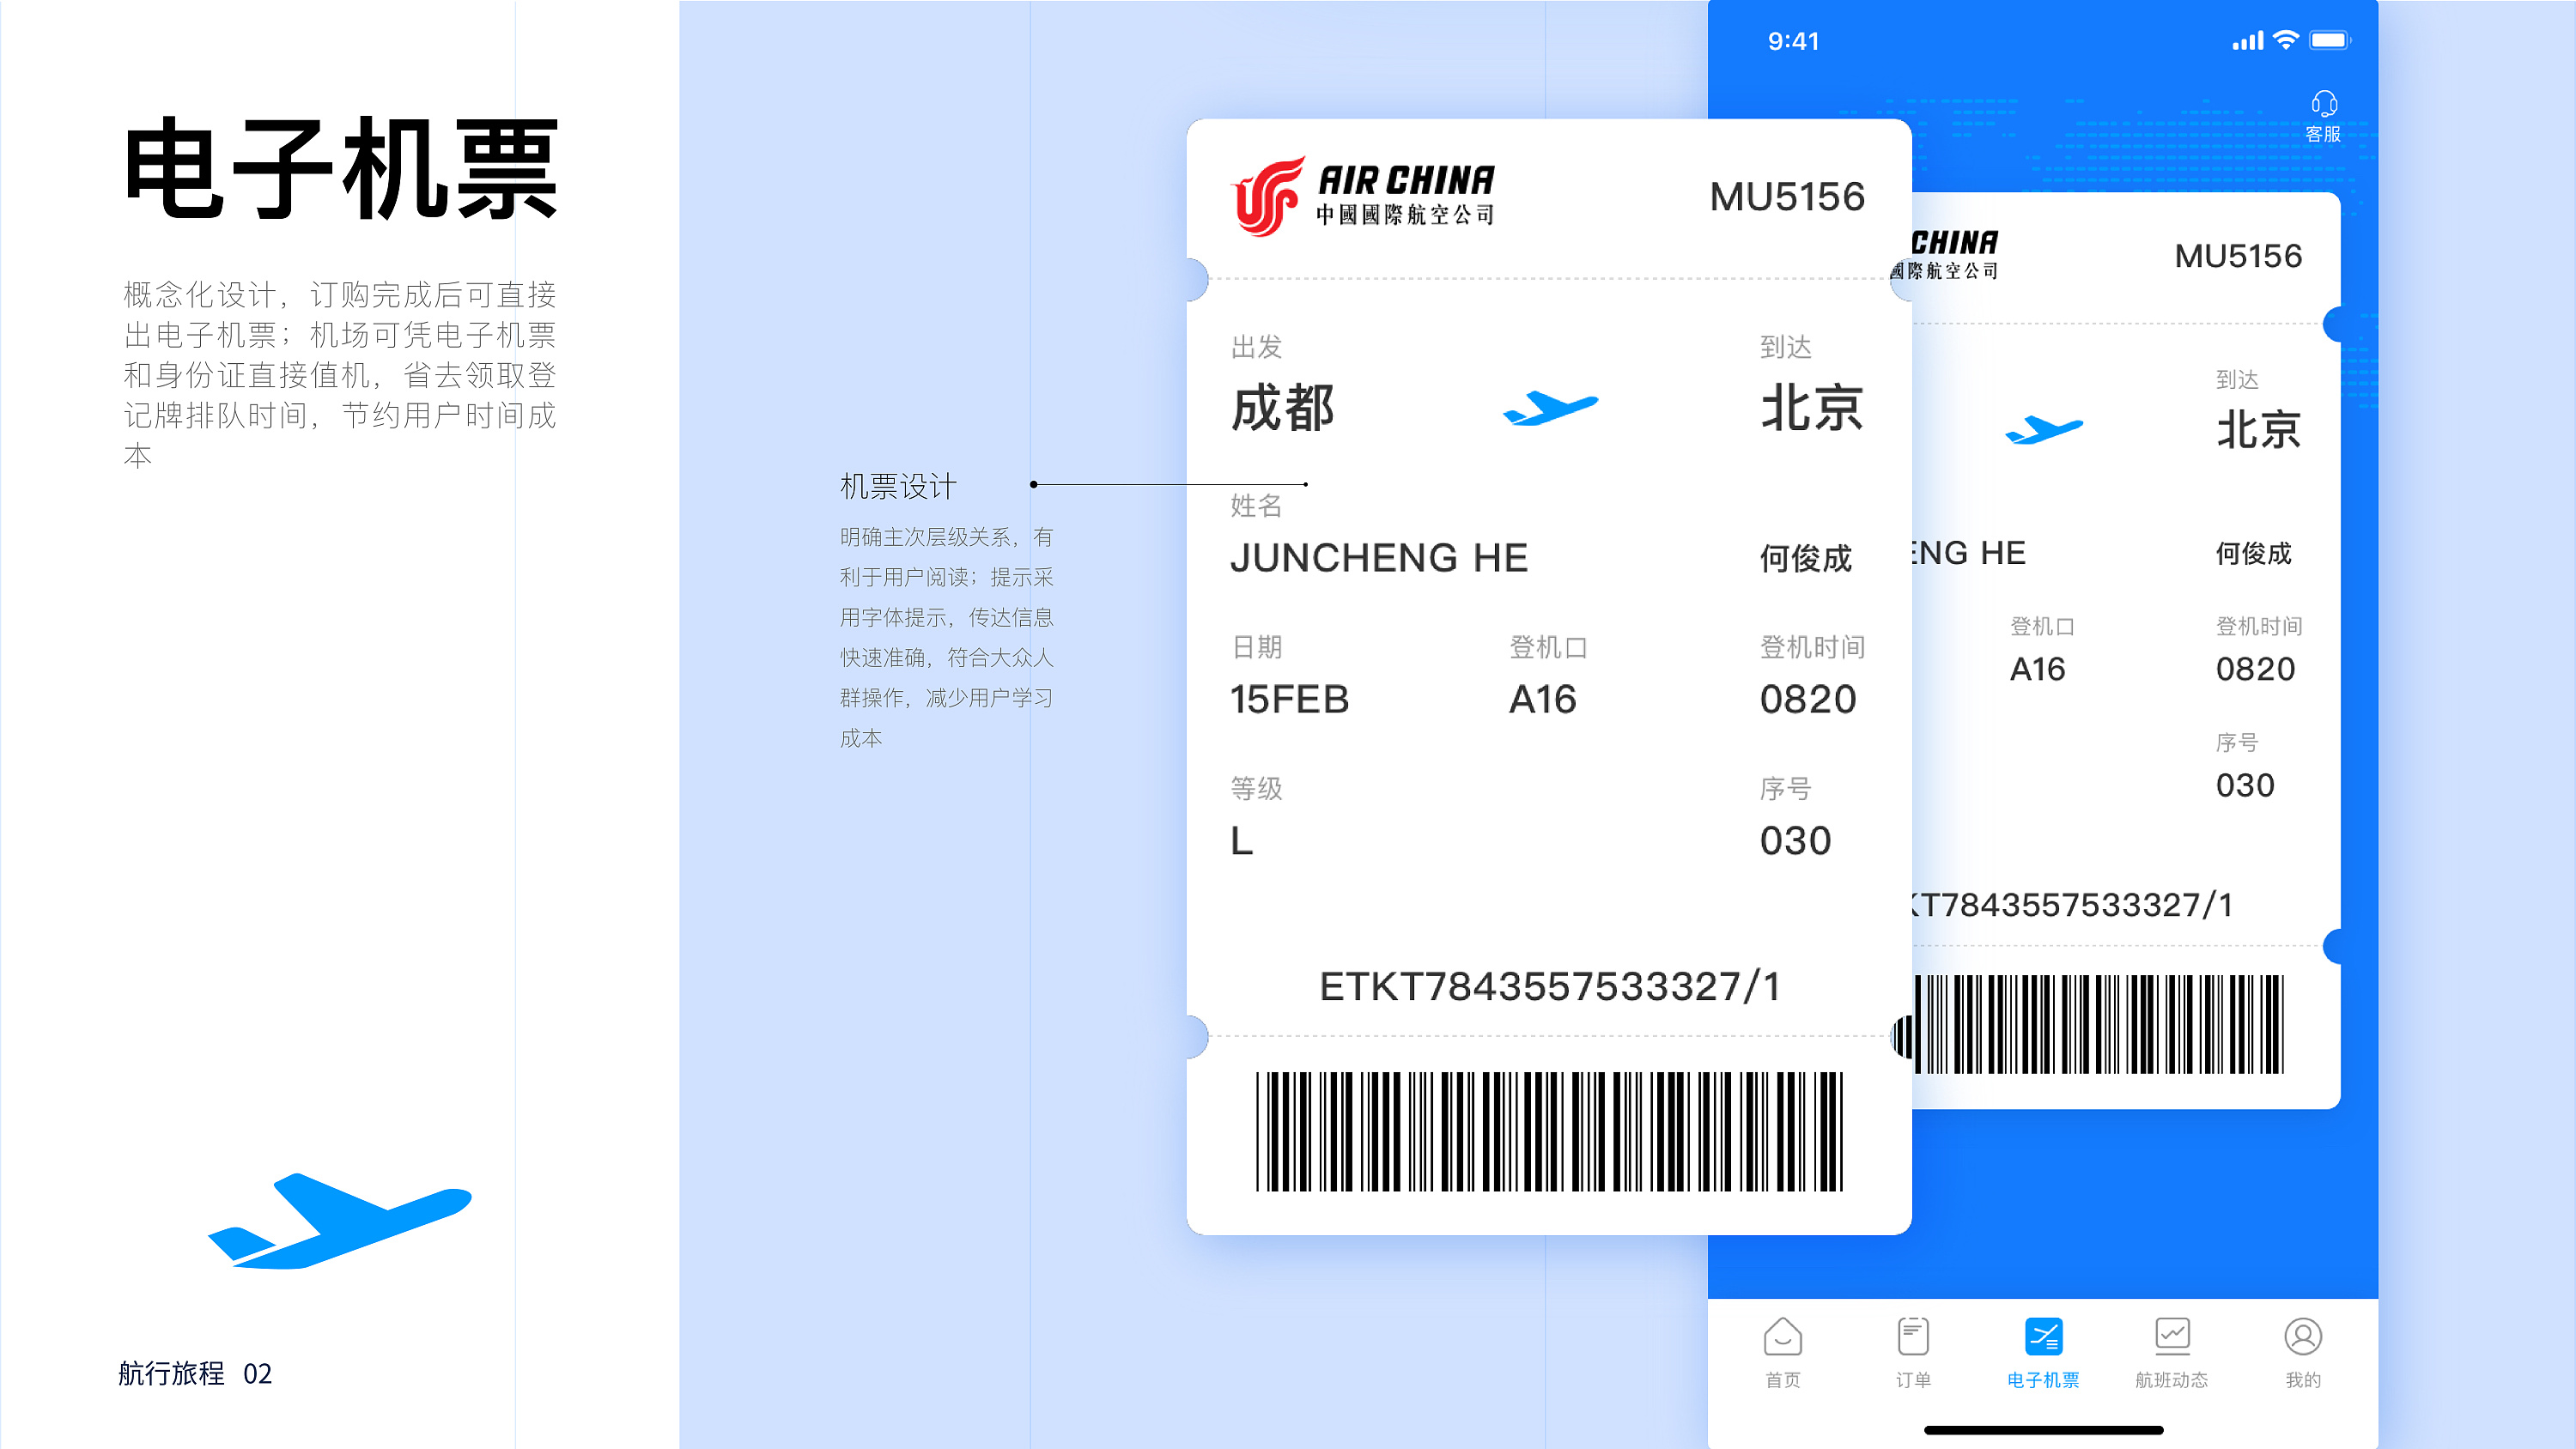 项目:艺龙国内机票实时数据爬虫_weixin_34130269的博客-CSDN博客